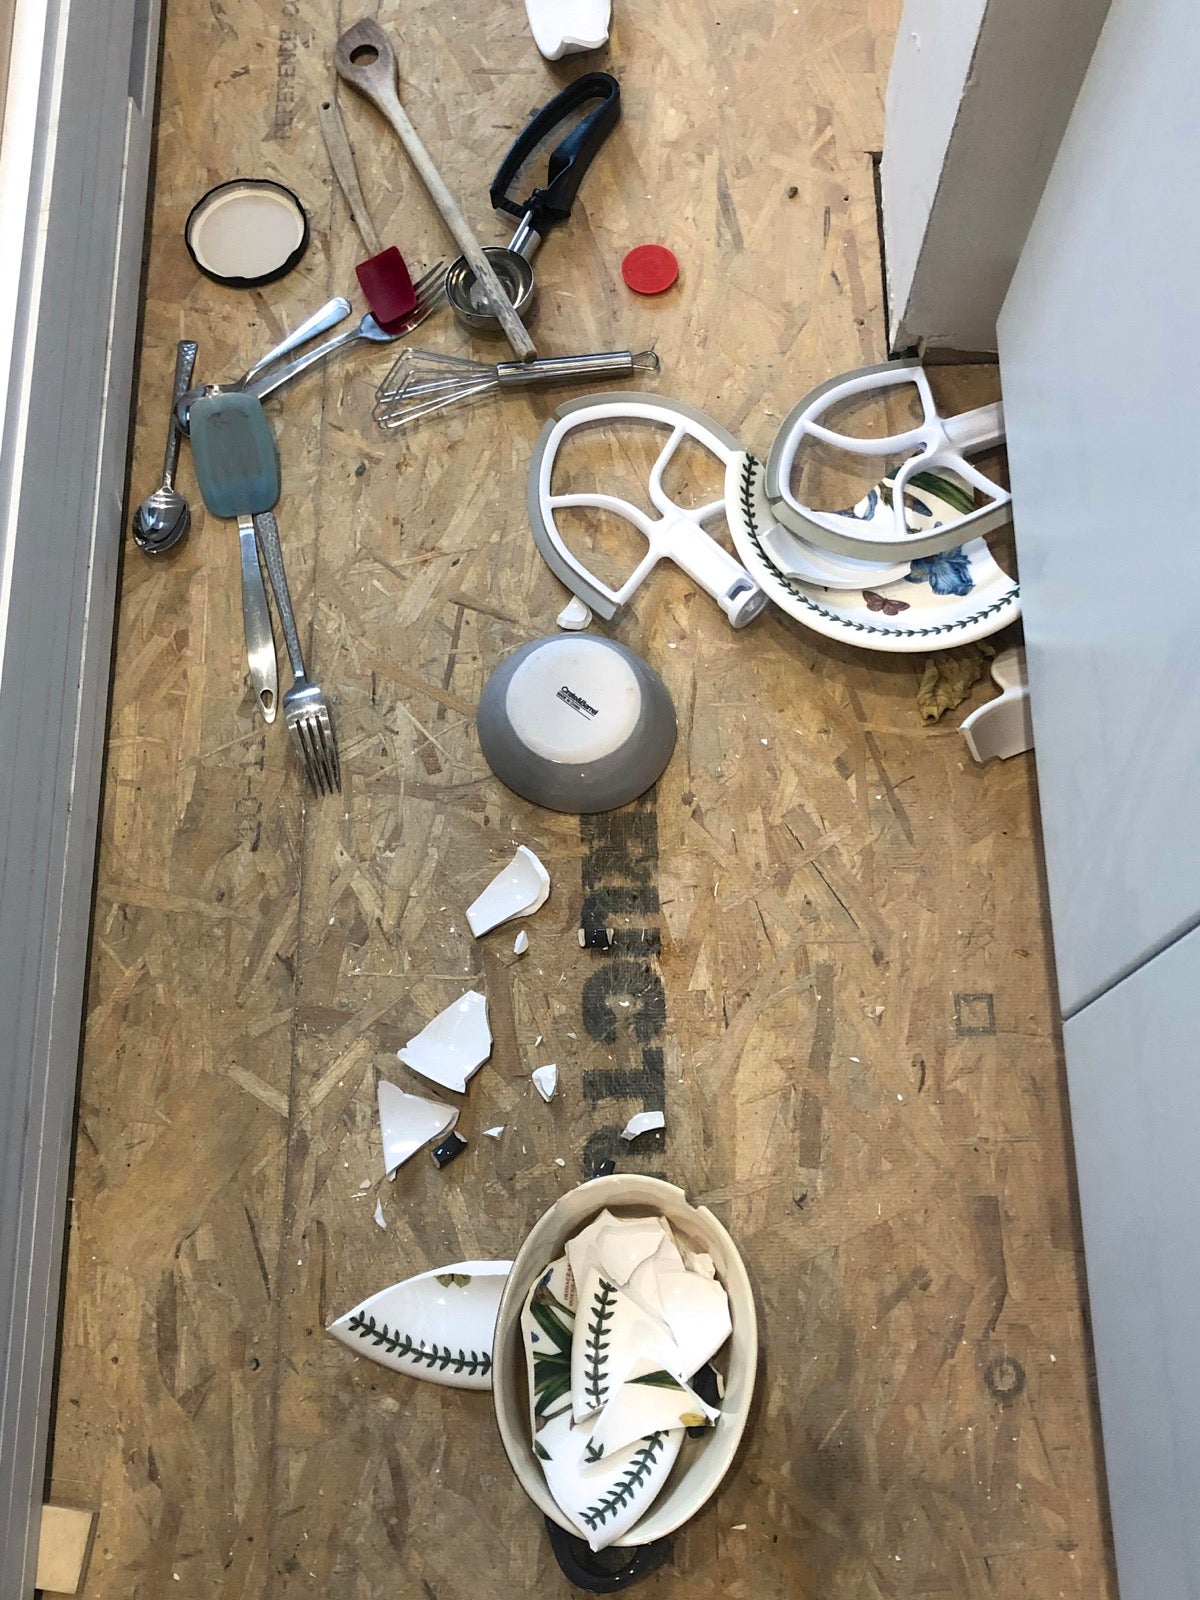 Kitchen floor with broken crockery, spilled silverware, and KitchenAid mixer attachments.